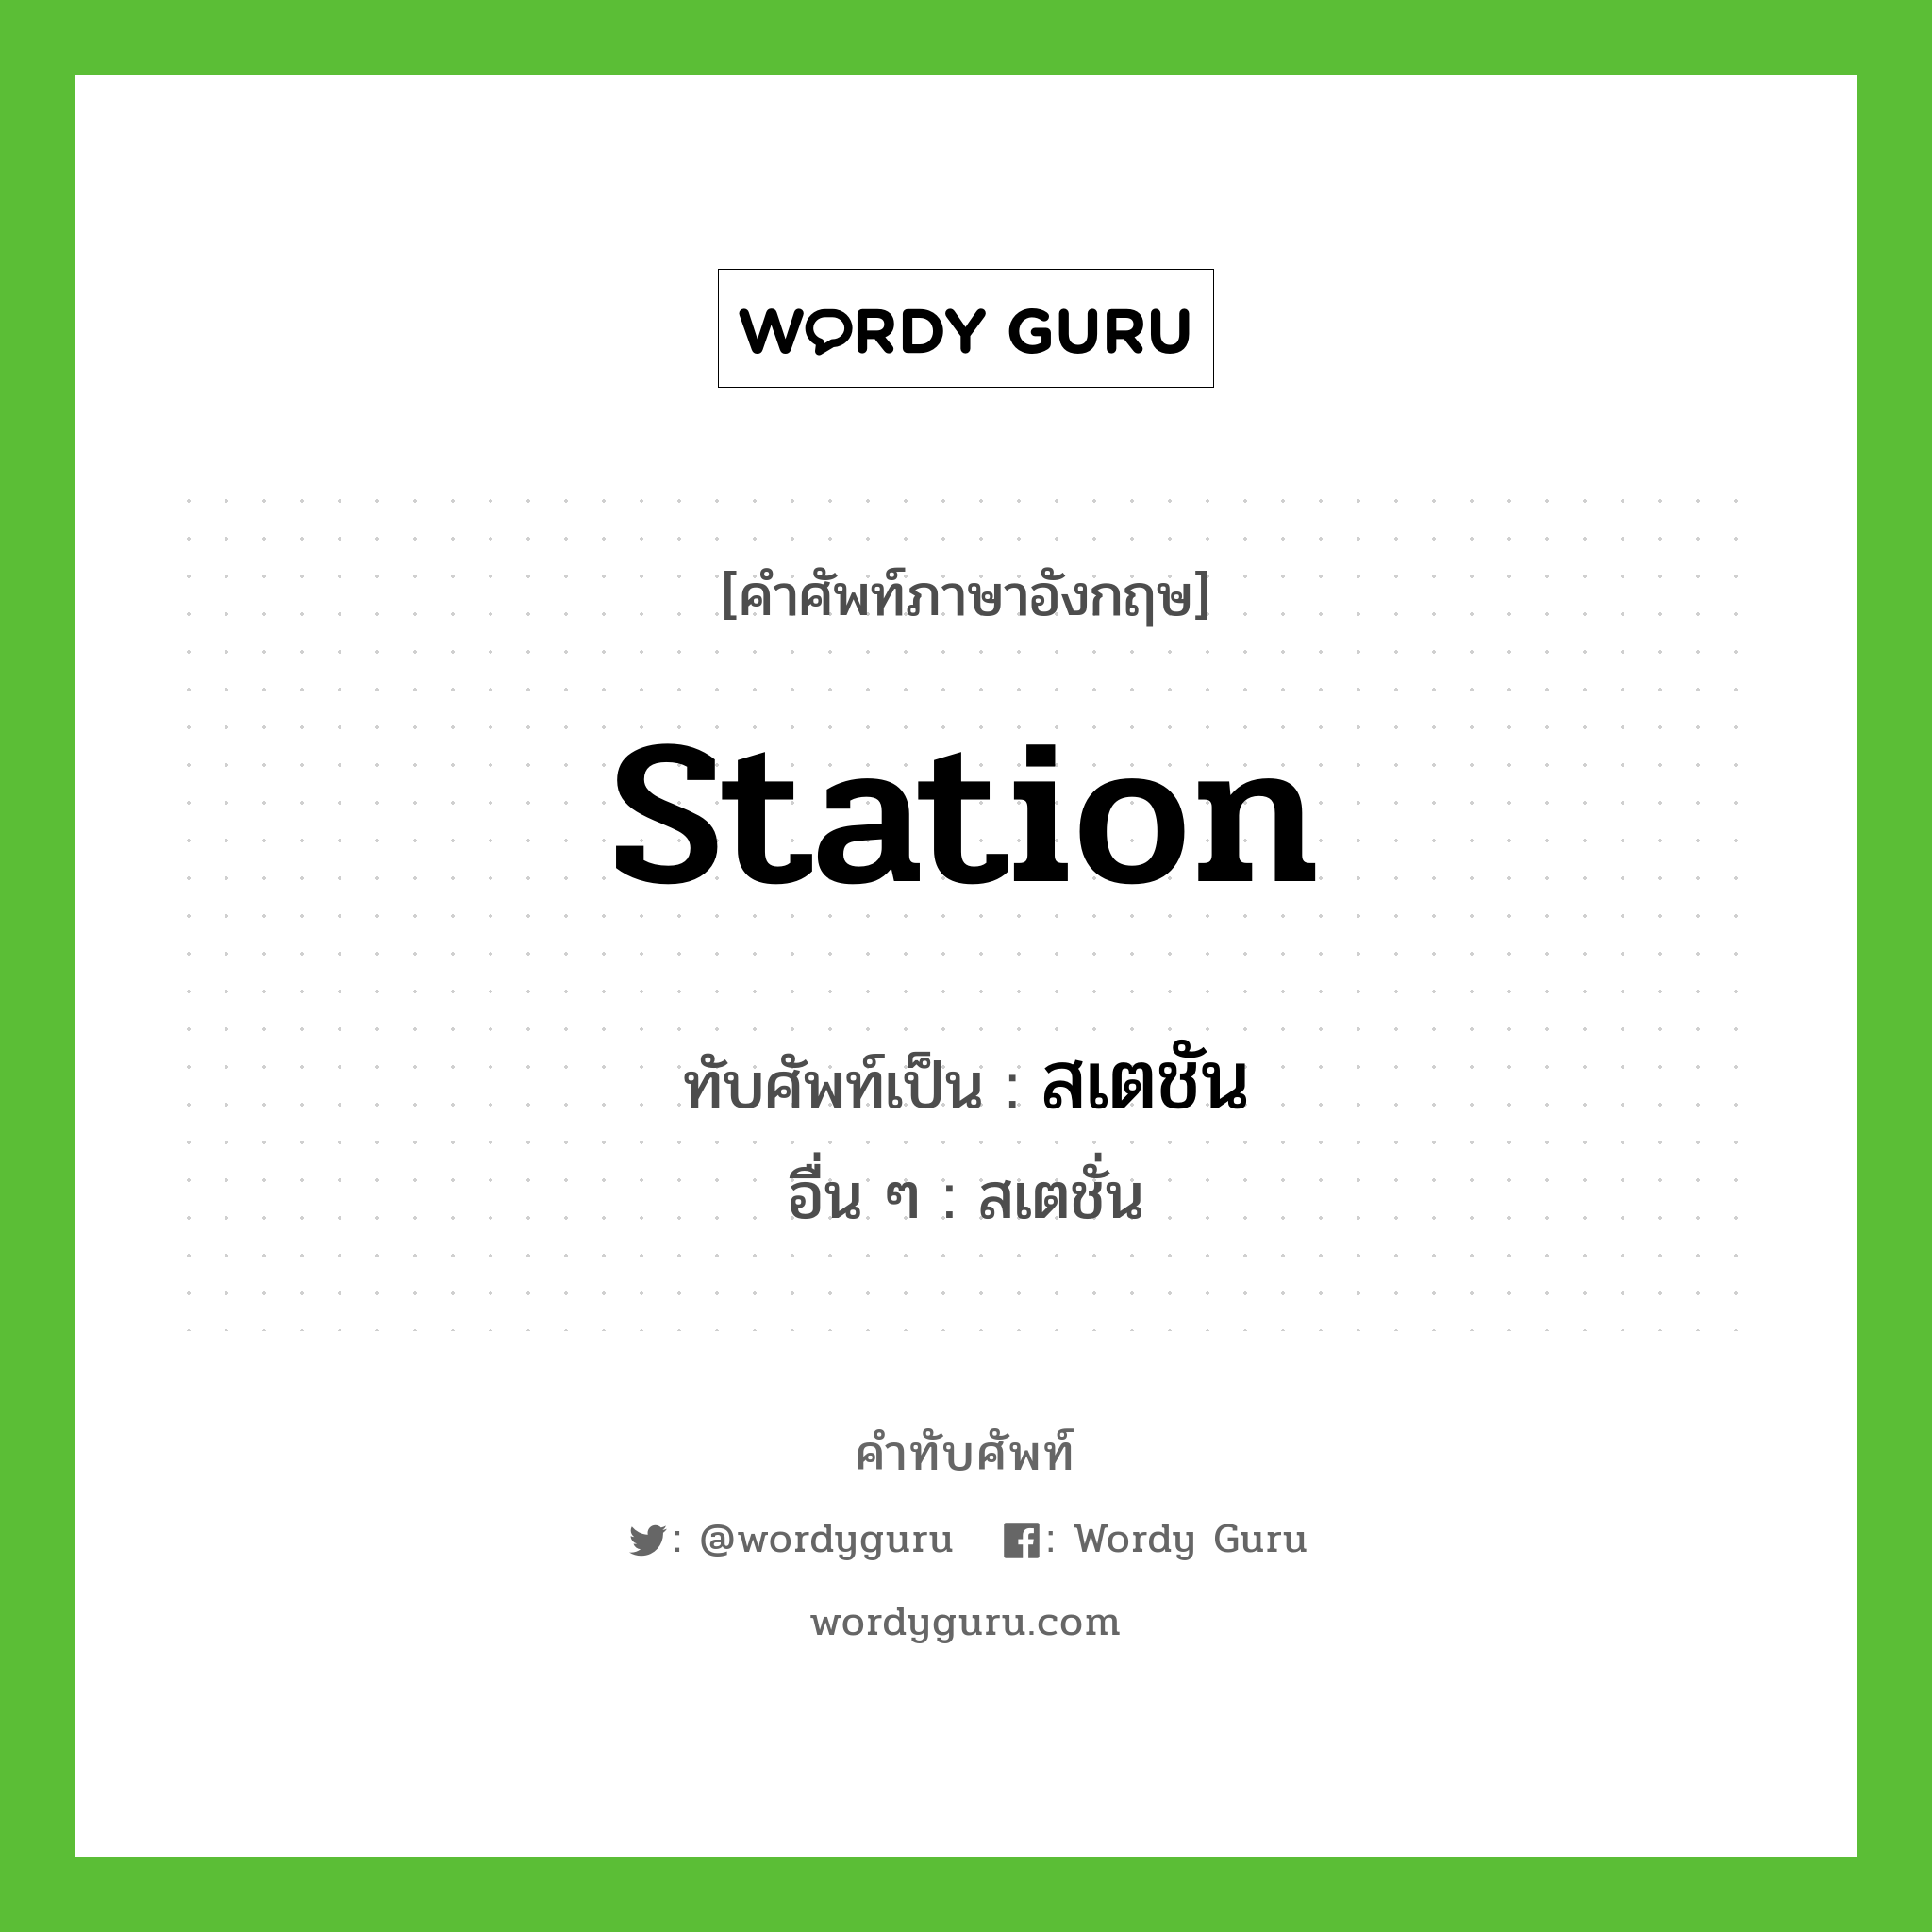 station เขียนเป็นคำไทยว่าอะไร?, คำศัพท์ภาษาอังกฤษ station ทับศัพท์เป็น สเตชัน อื่น ๆ สเตชั่น